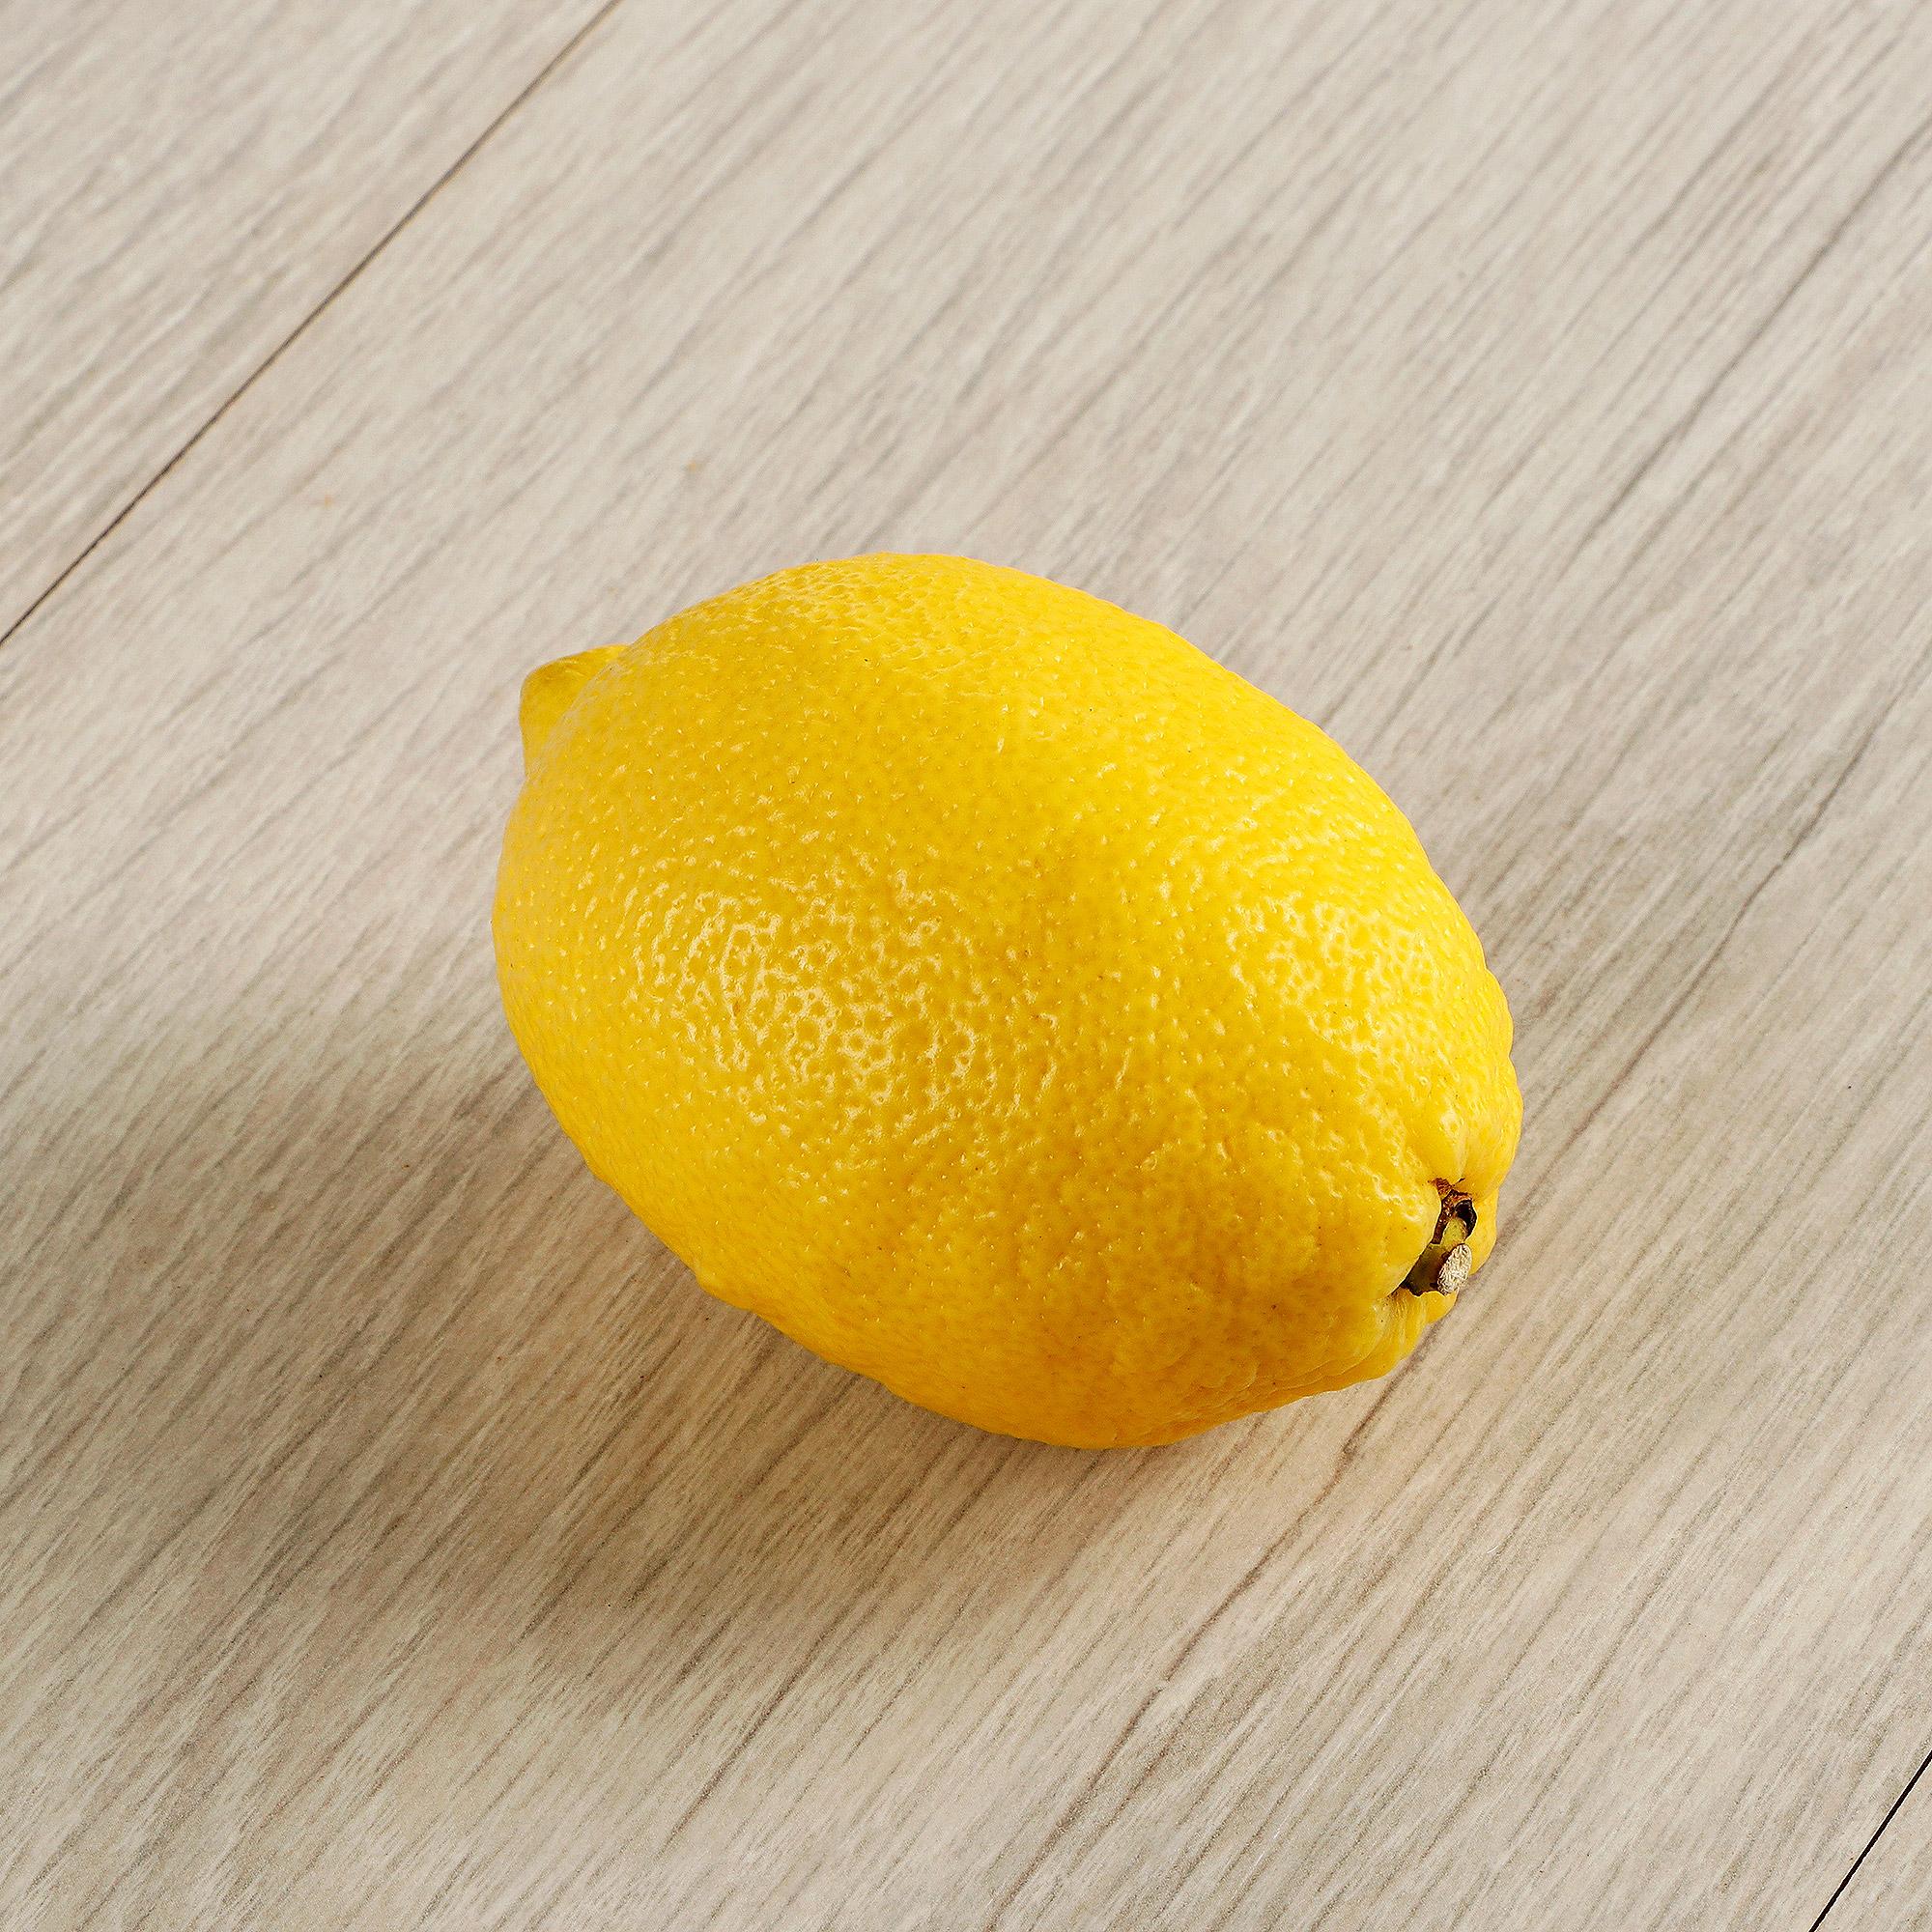 Лимон Турция